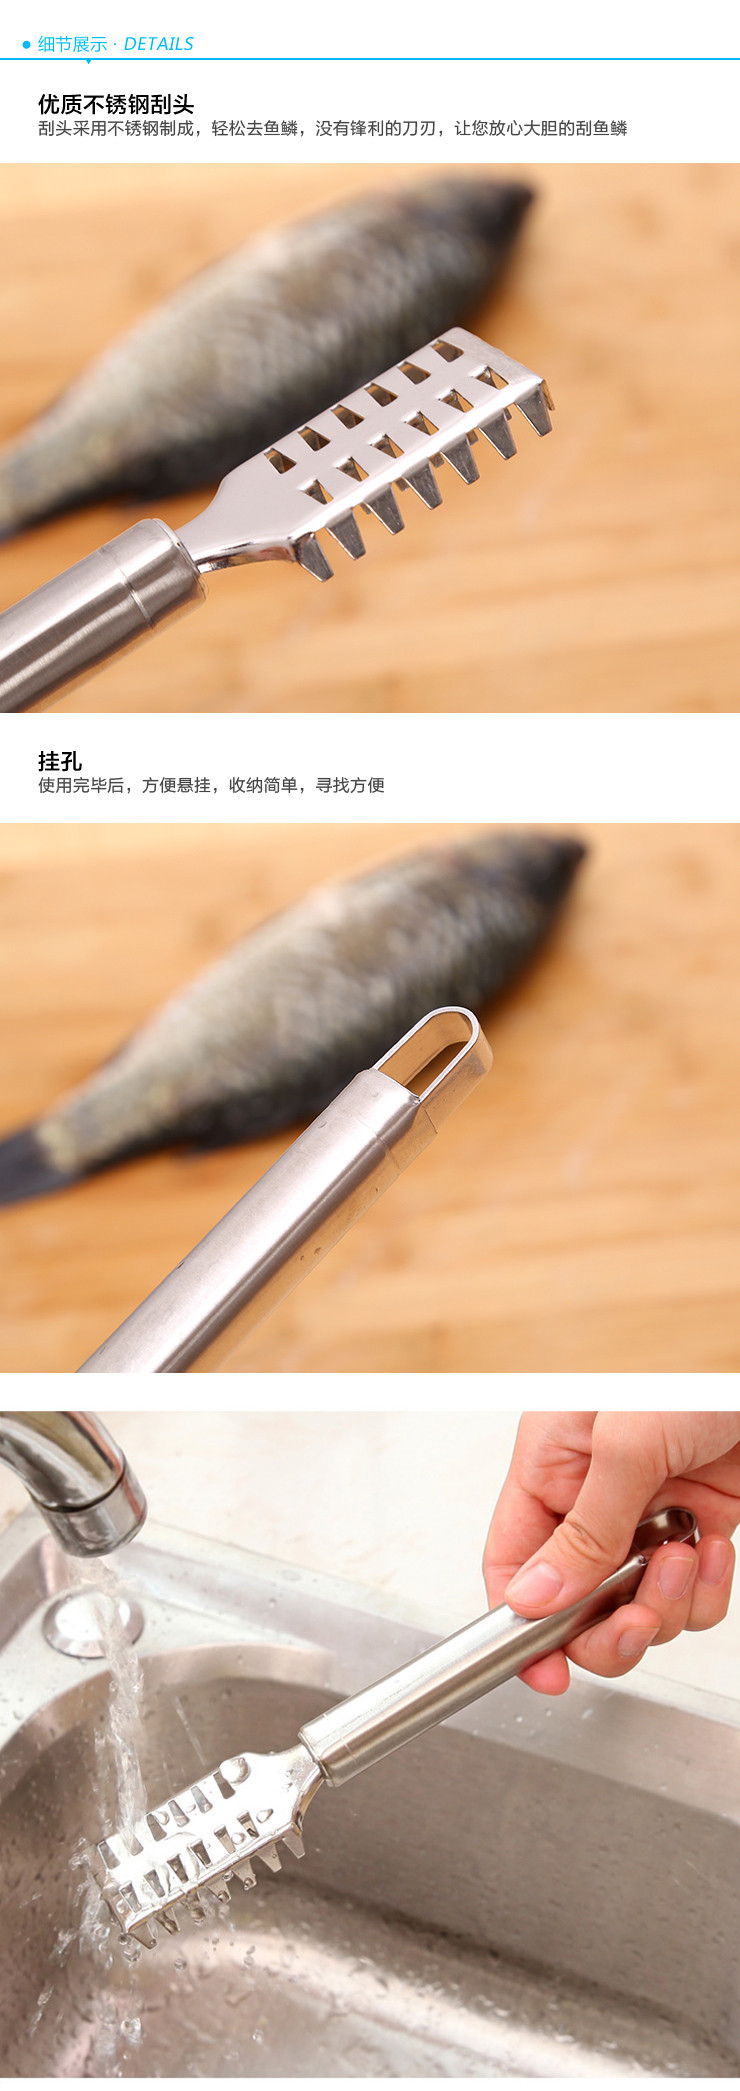 鱼鳞刨刮鱼多功能不锈钢家用去鳞器杀鱼工具厨房用品去鳞刀刷